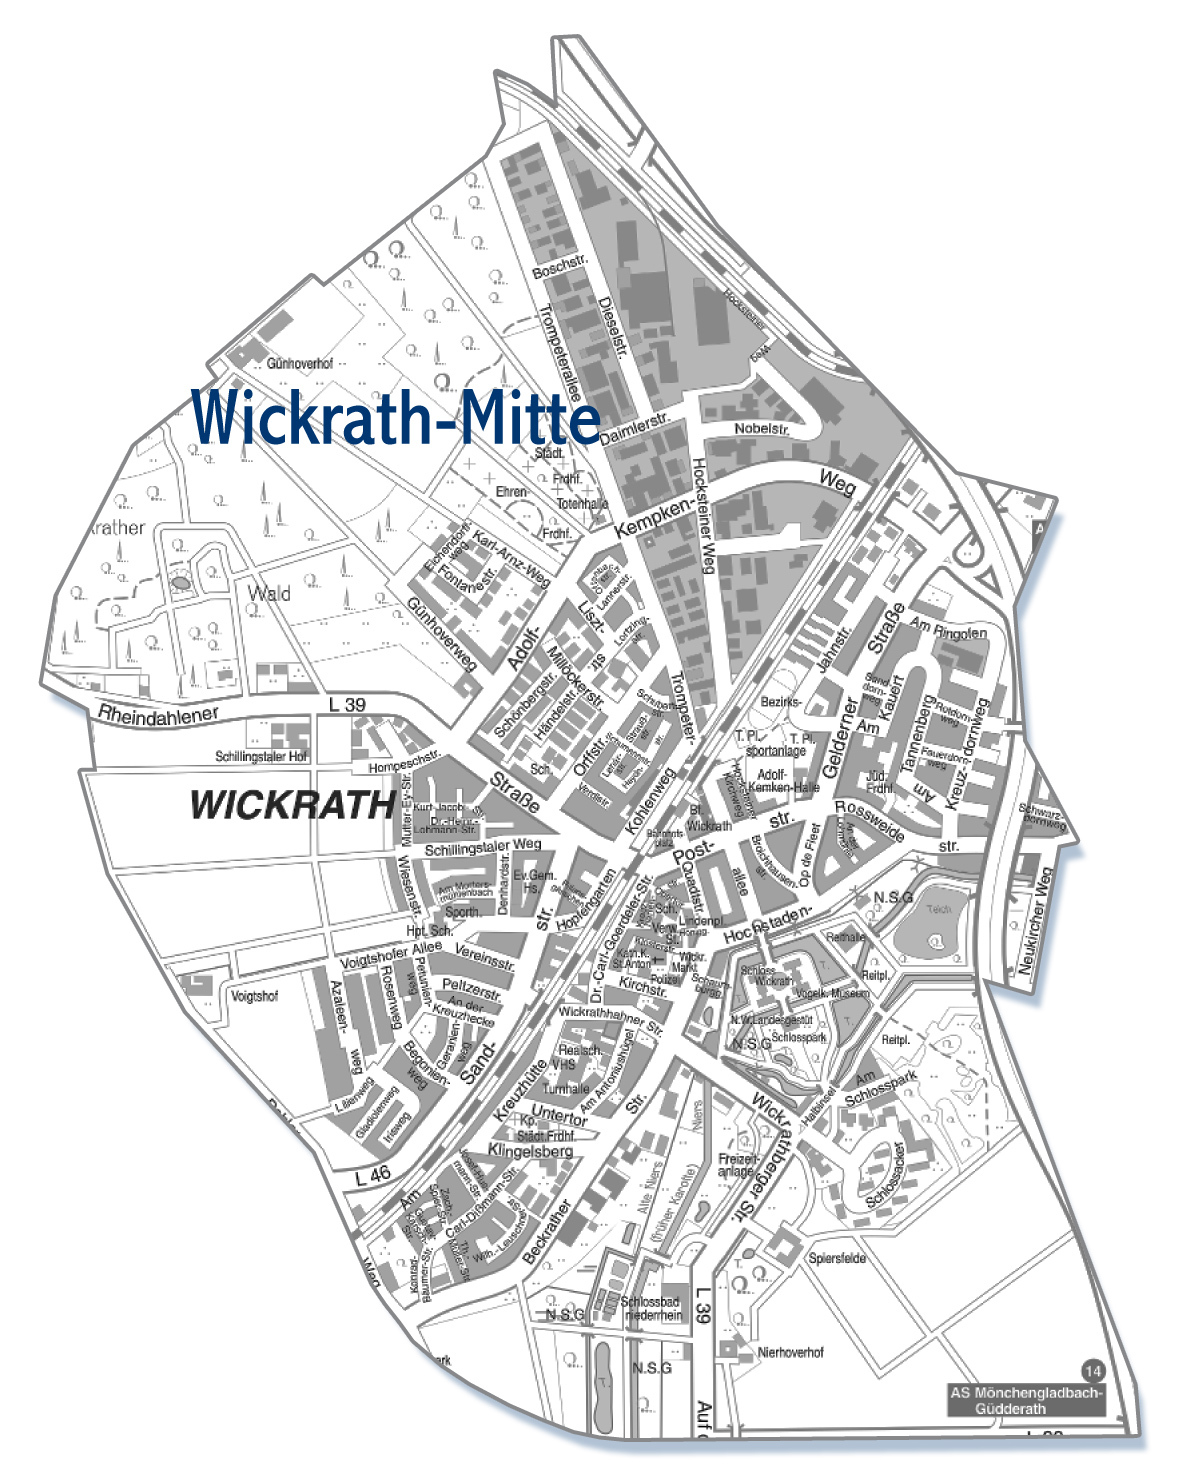 Wickrath-Mitte